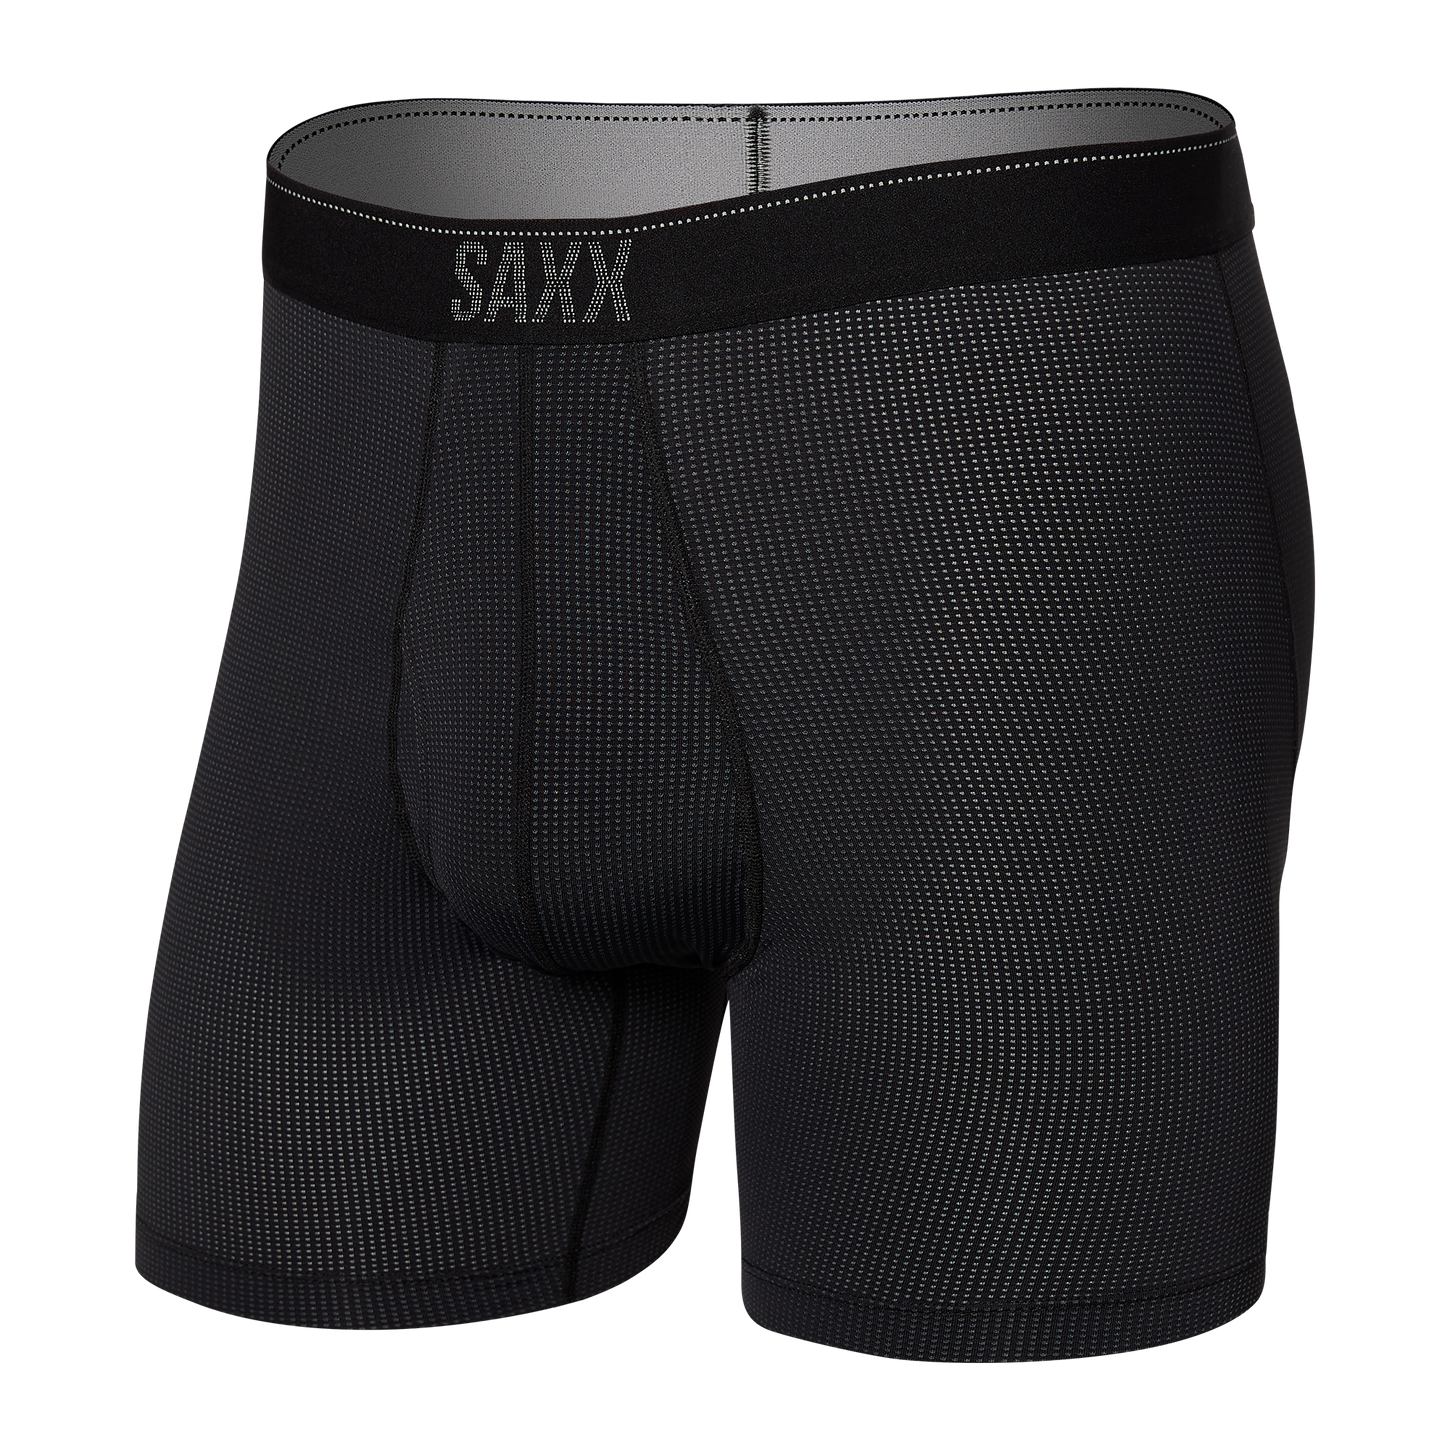 Saxx Men's Quest Boxer Brief Apparel SAXX Black II Small 